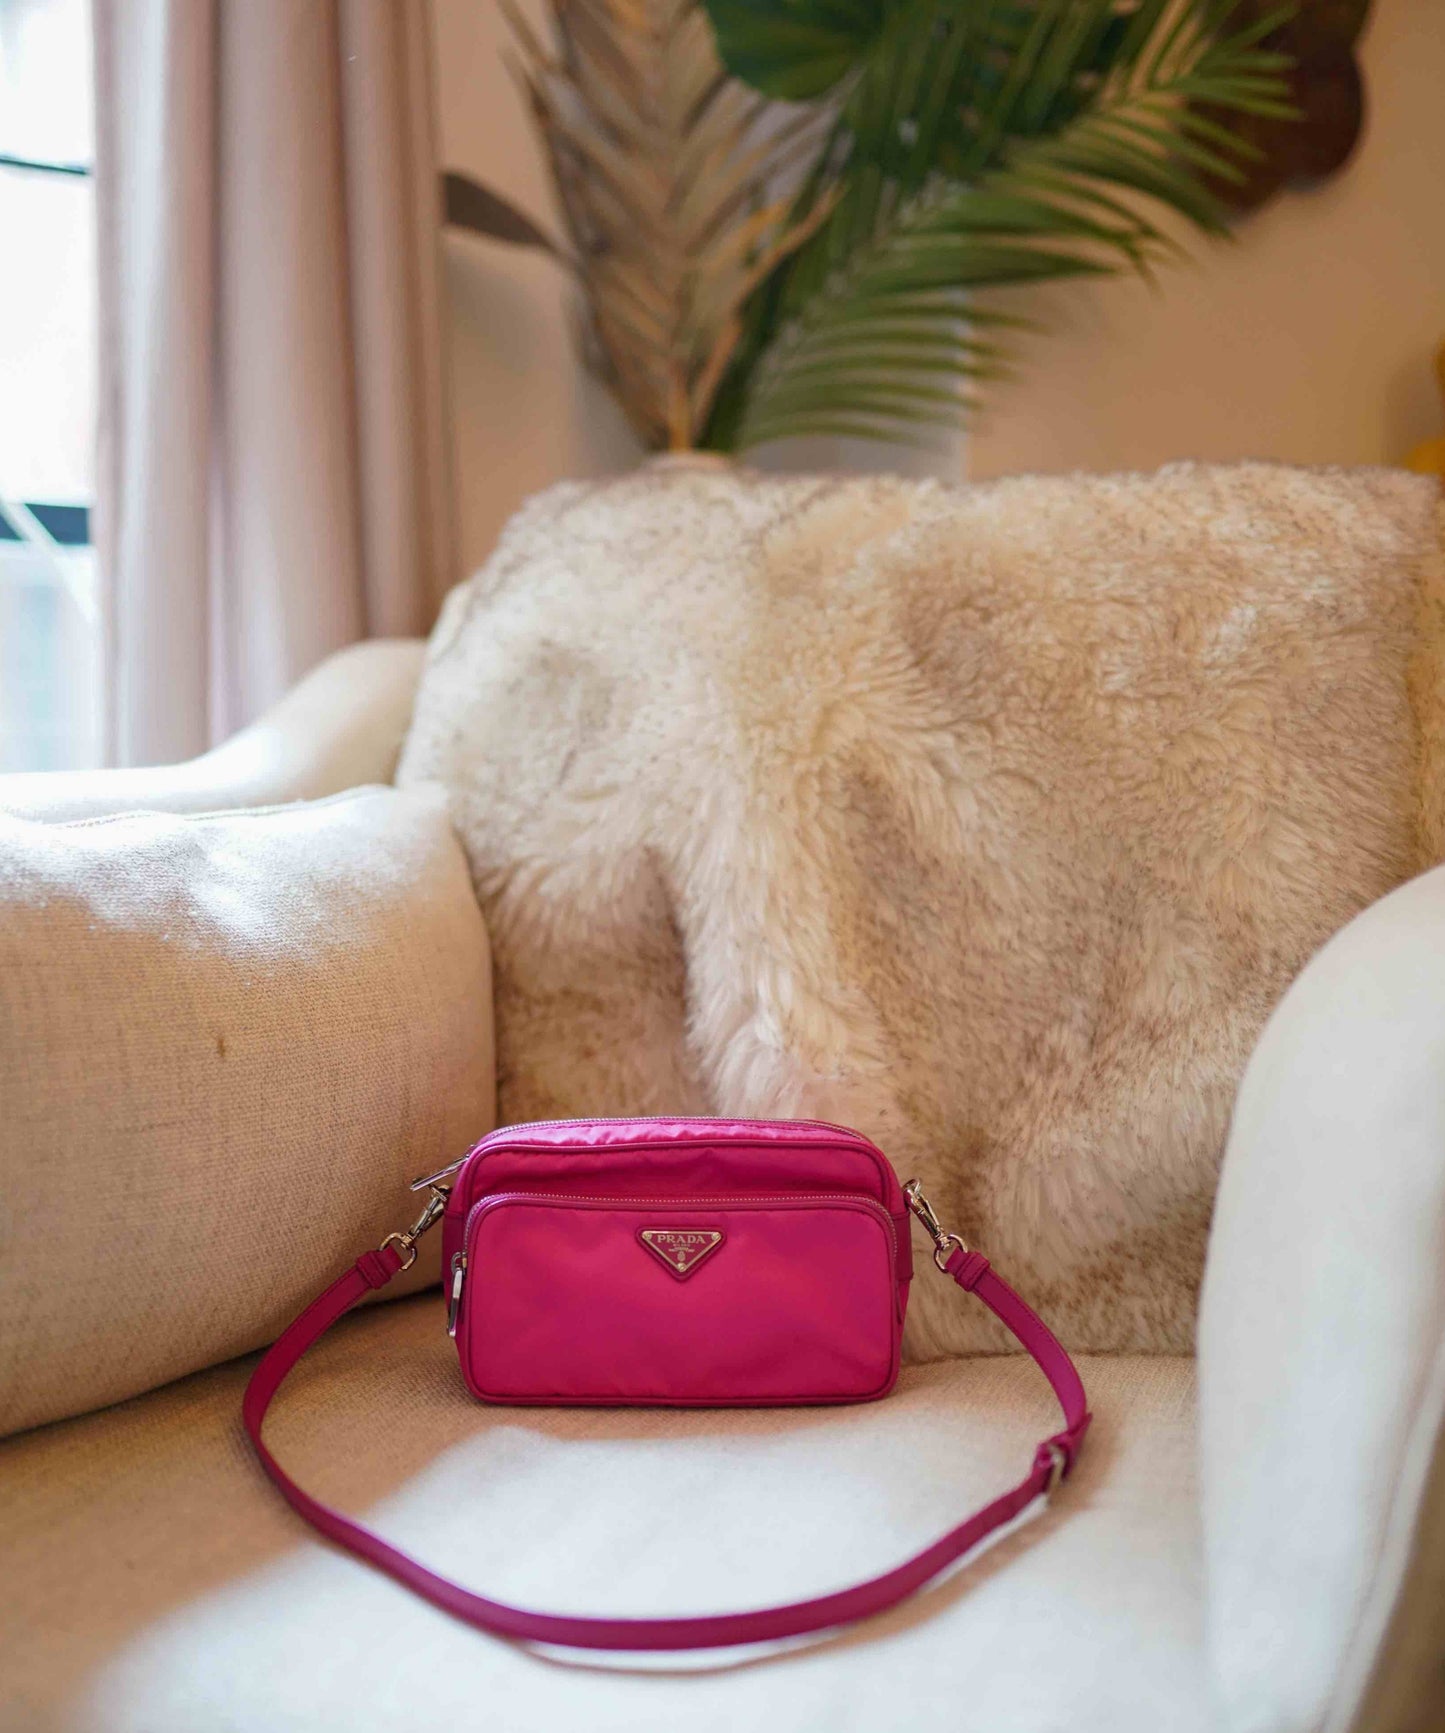 Prada Pink Saffiano Leather Camera Crossbody Bag